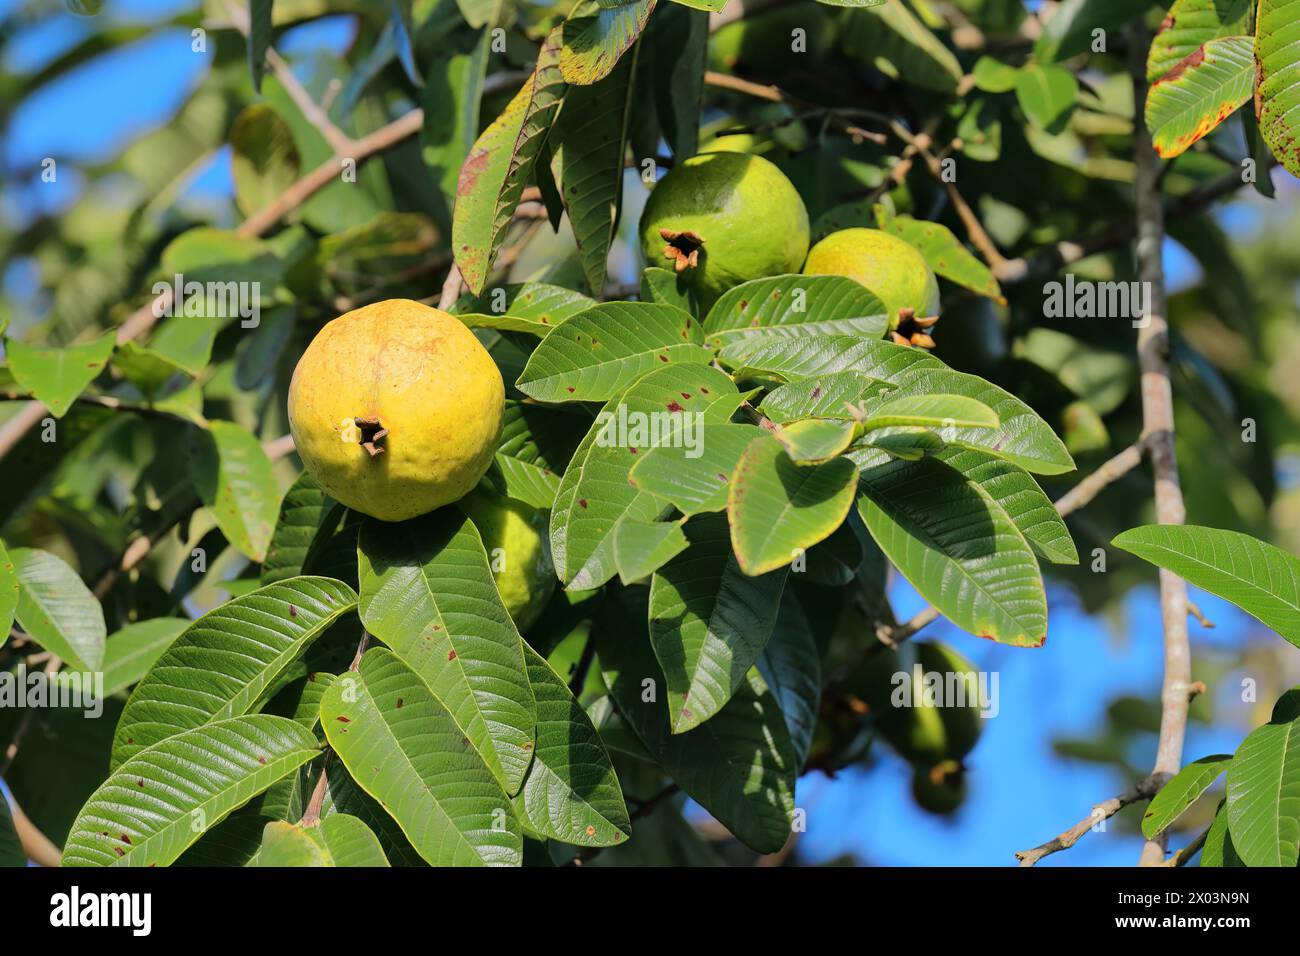 158 guava di mele o limone -Psidium guajava- frutti gialli coltivati nella Valle de Viñales, osservati durante la maturazione sull'albero. Viñales-Cuba. Foto Stock